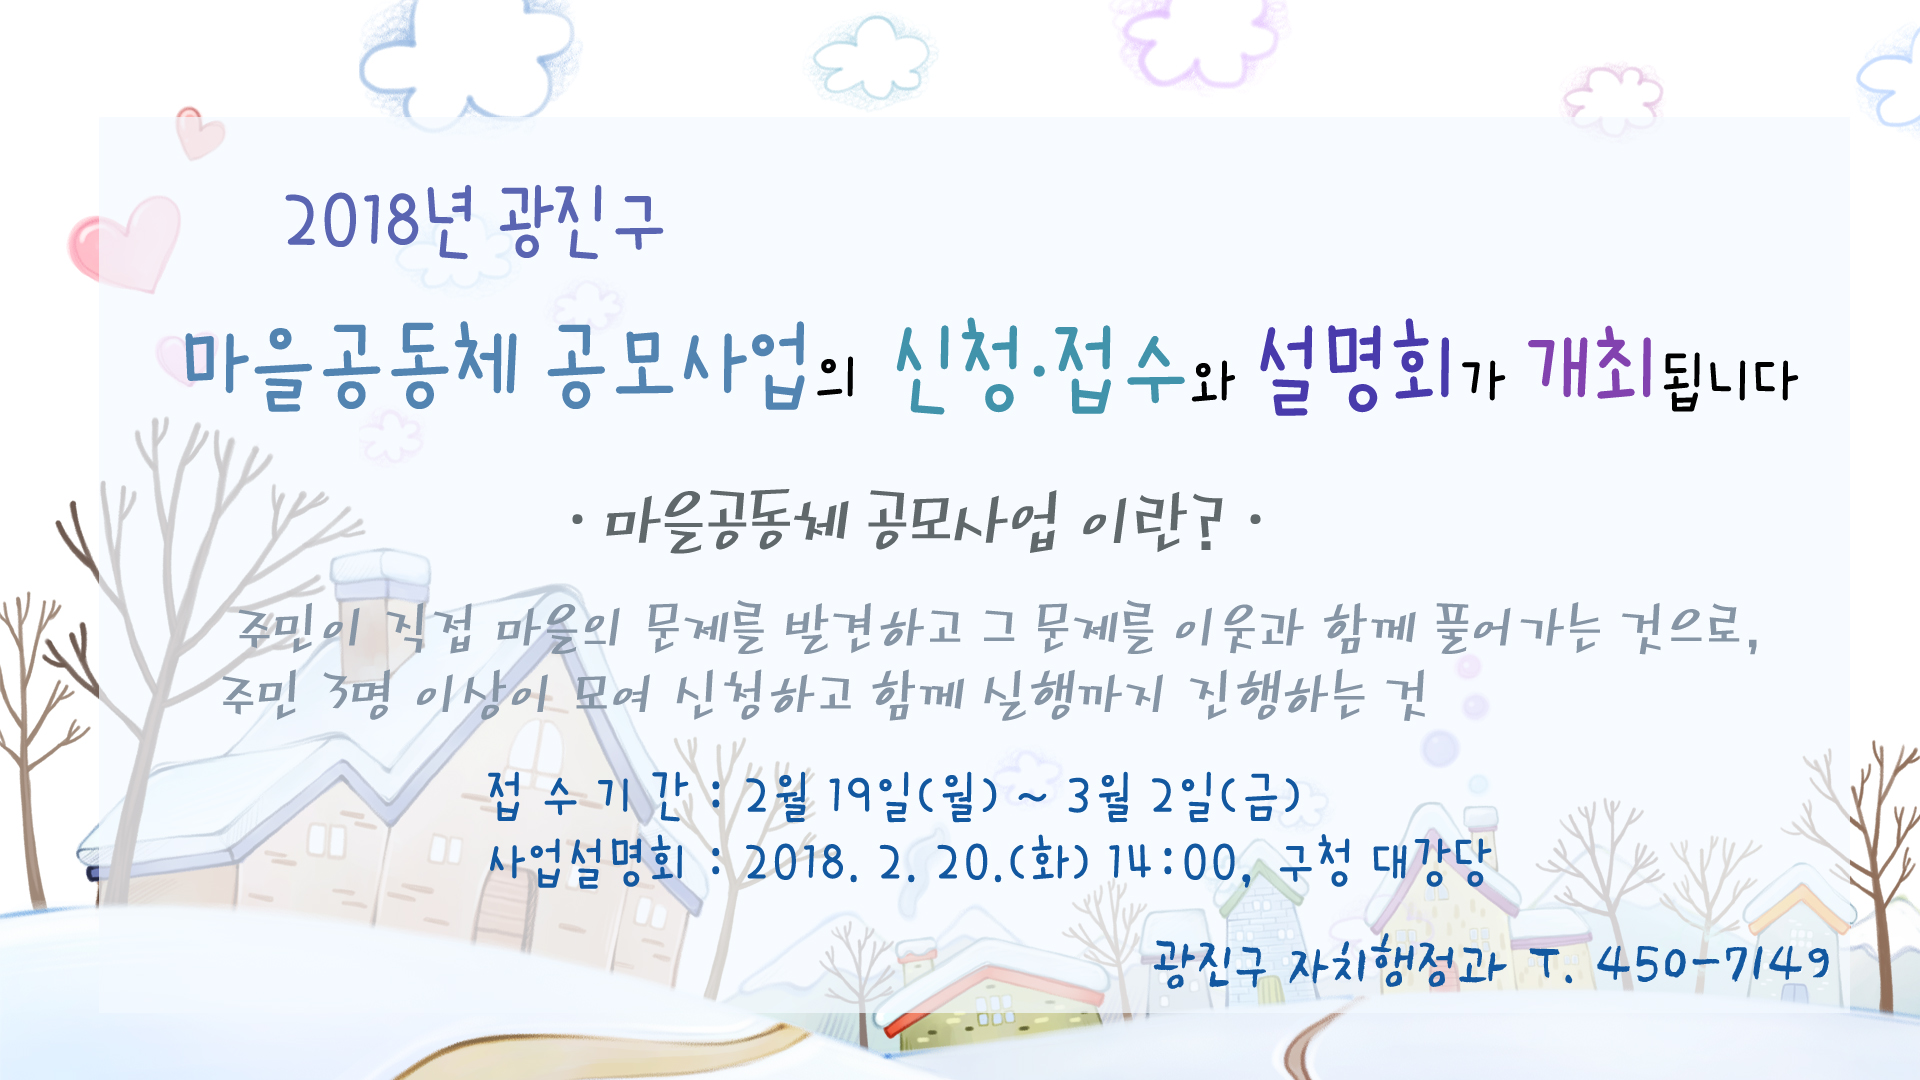 2018년 광진구 마을공동체 공모사업의 설명회 개최